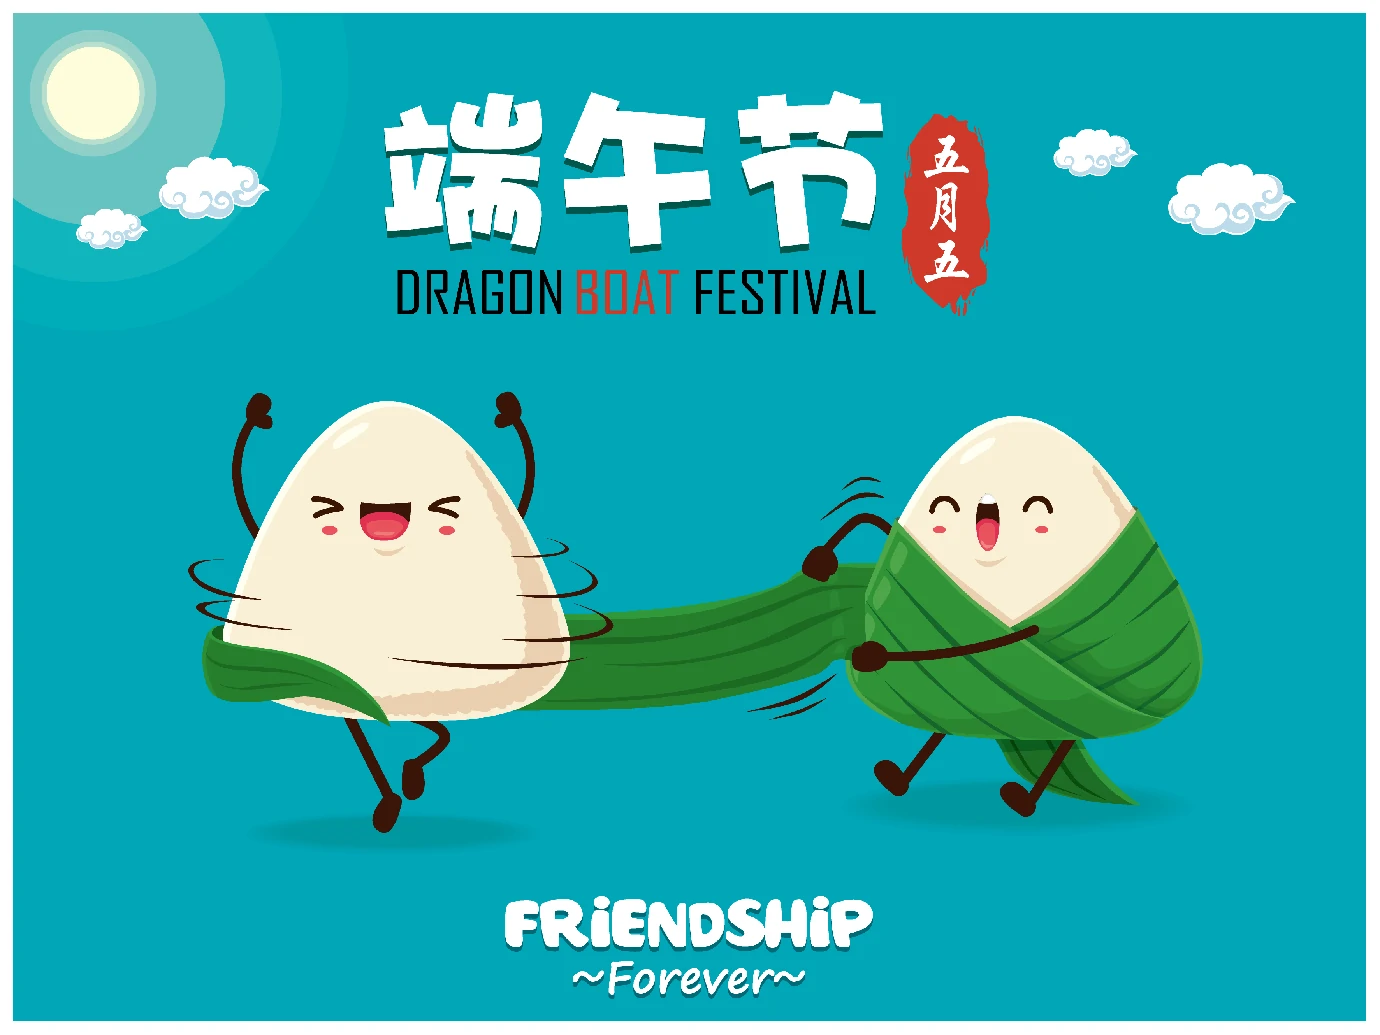 中国传统节日卡通手绘端午节赛龙舟粽子插画海报AI矢量设计素材【062】